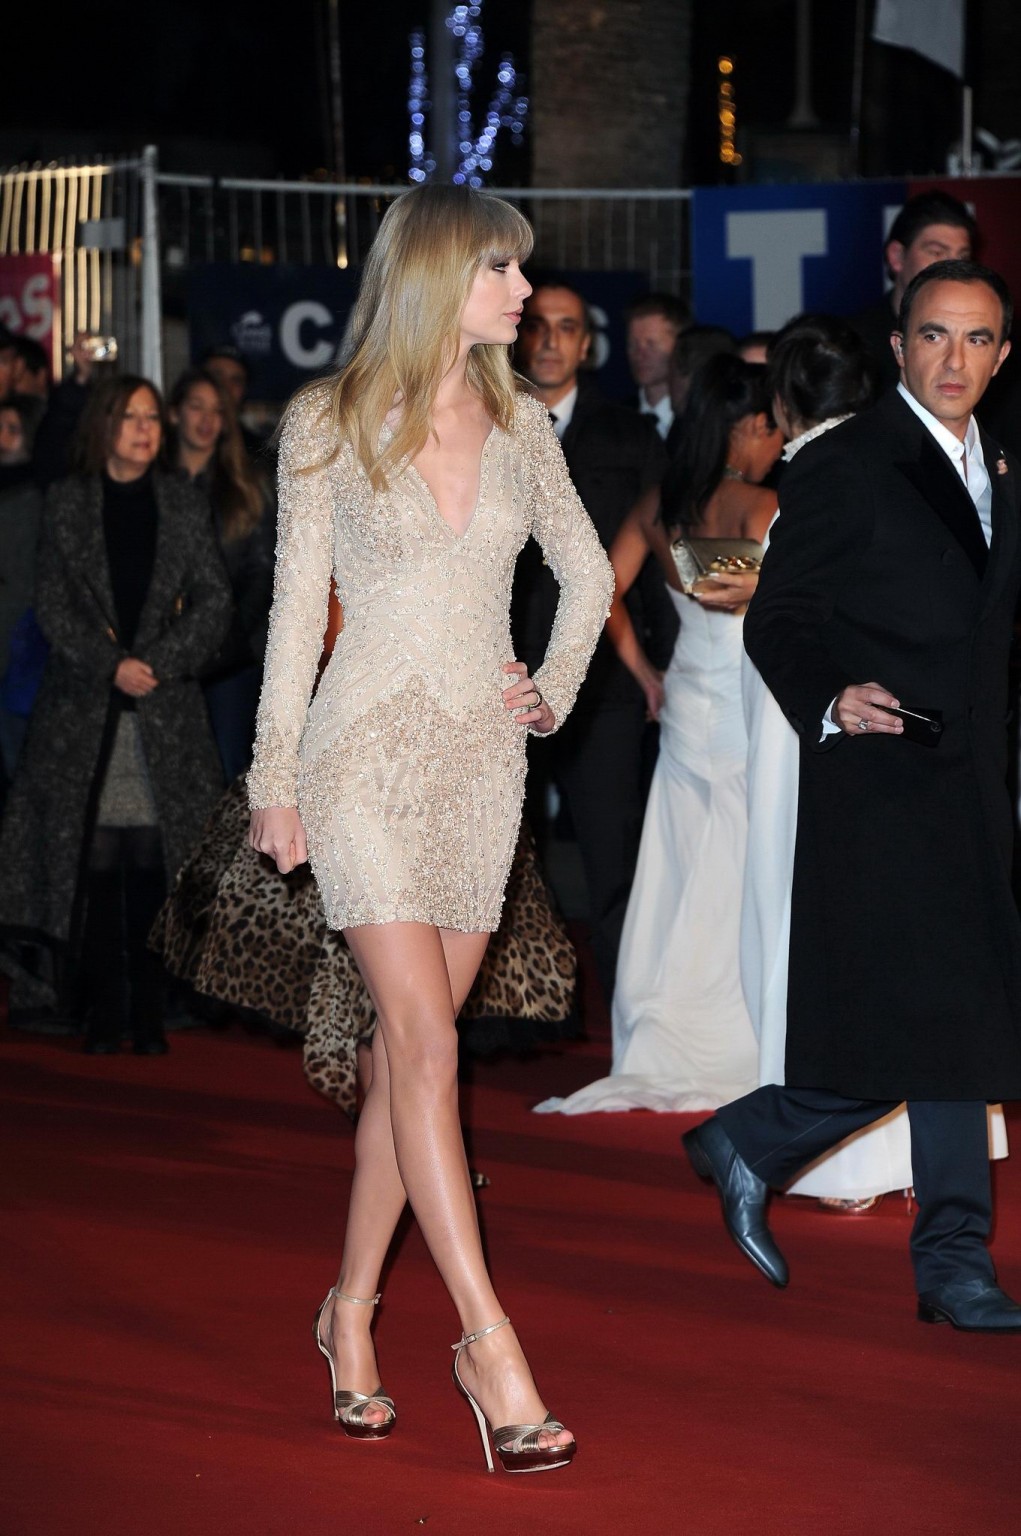 Taylor swift de piernas largas con un mini vestido en los premios de la música nrj 2013 en cannes
 #75242693